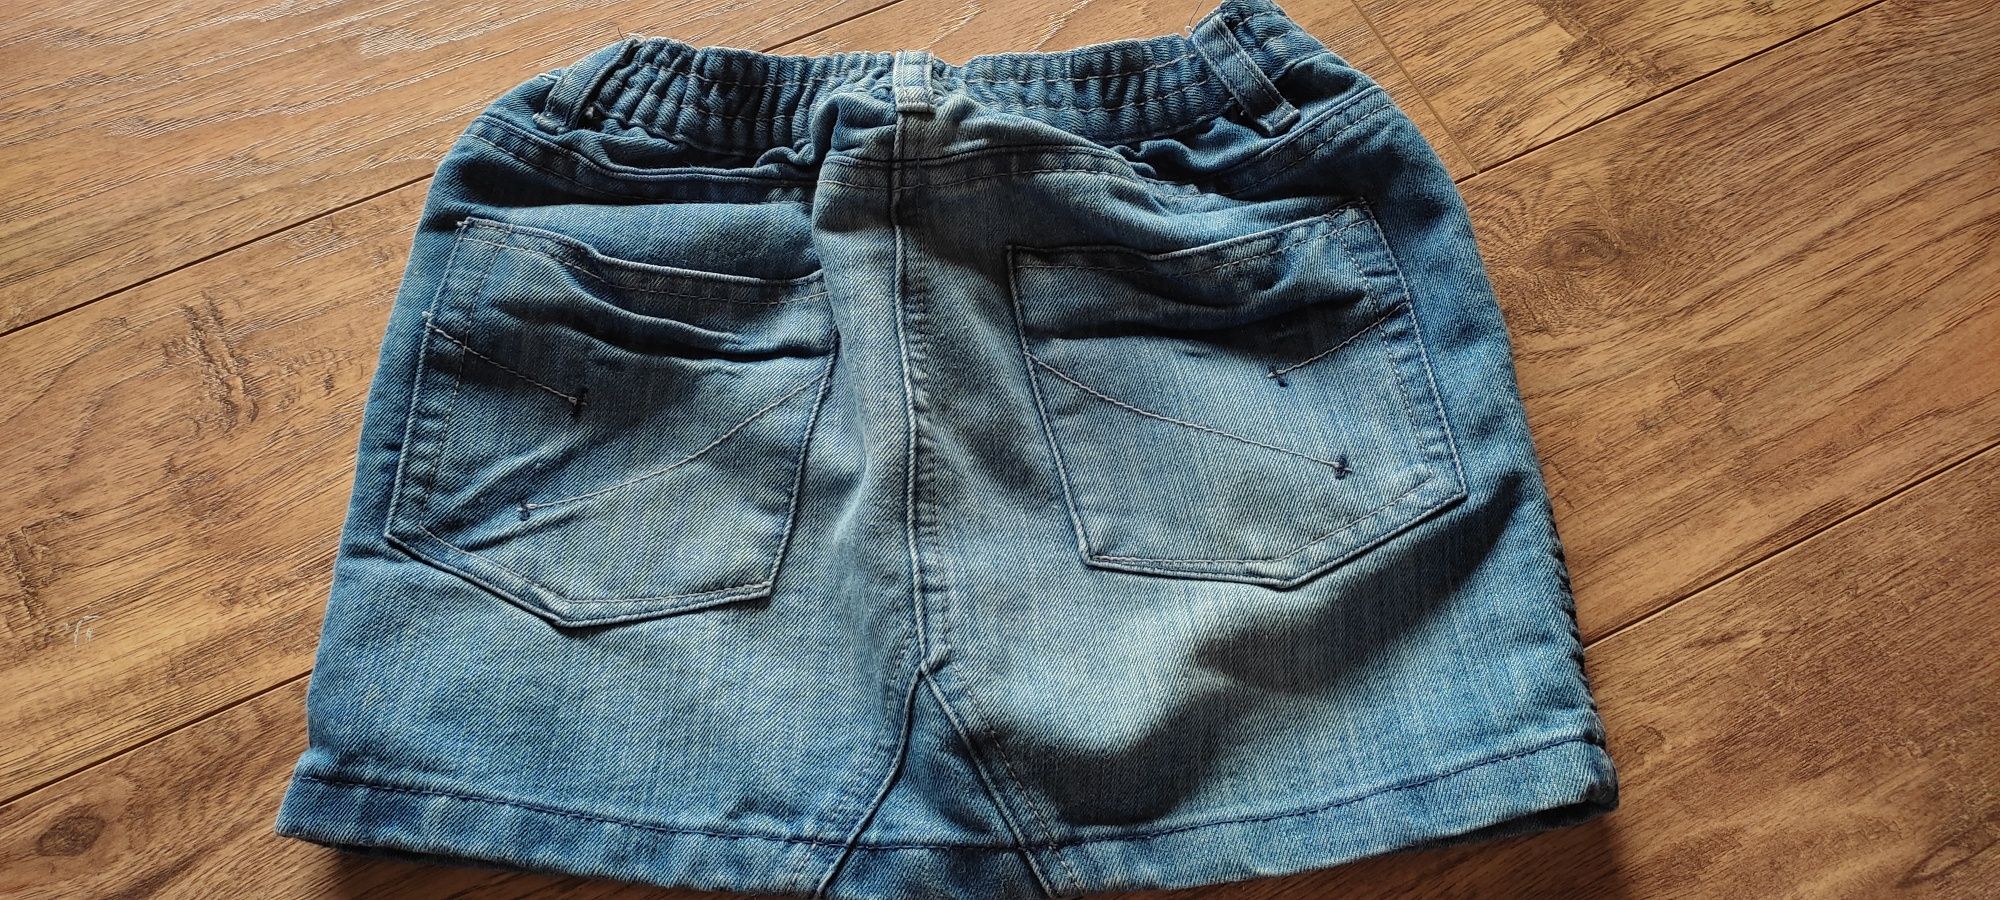 Spódnica jeansowa dziewczęca